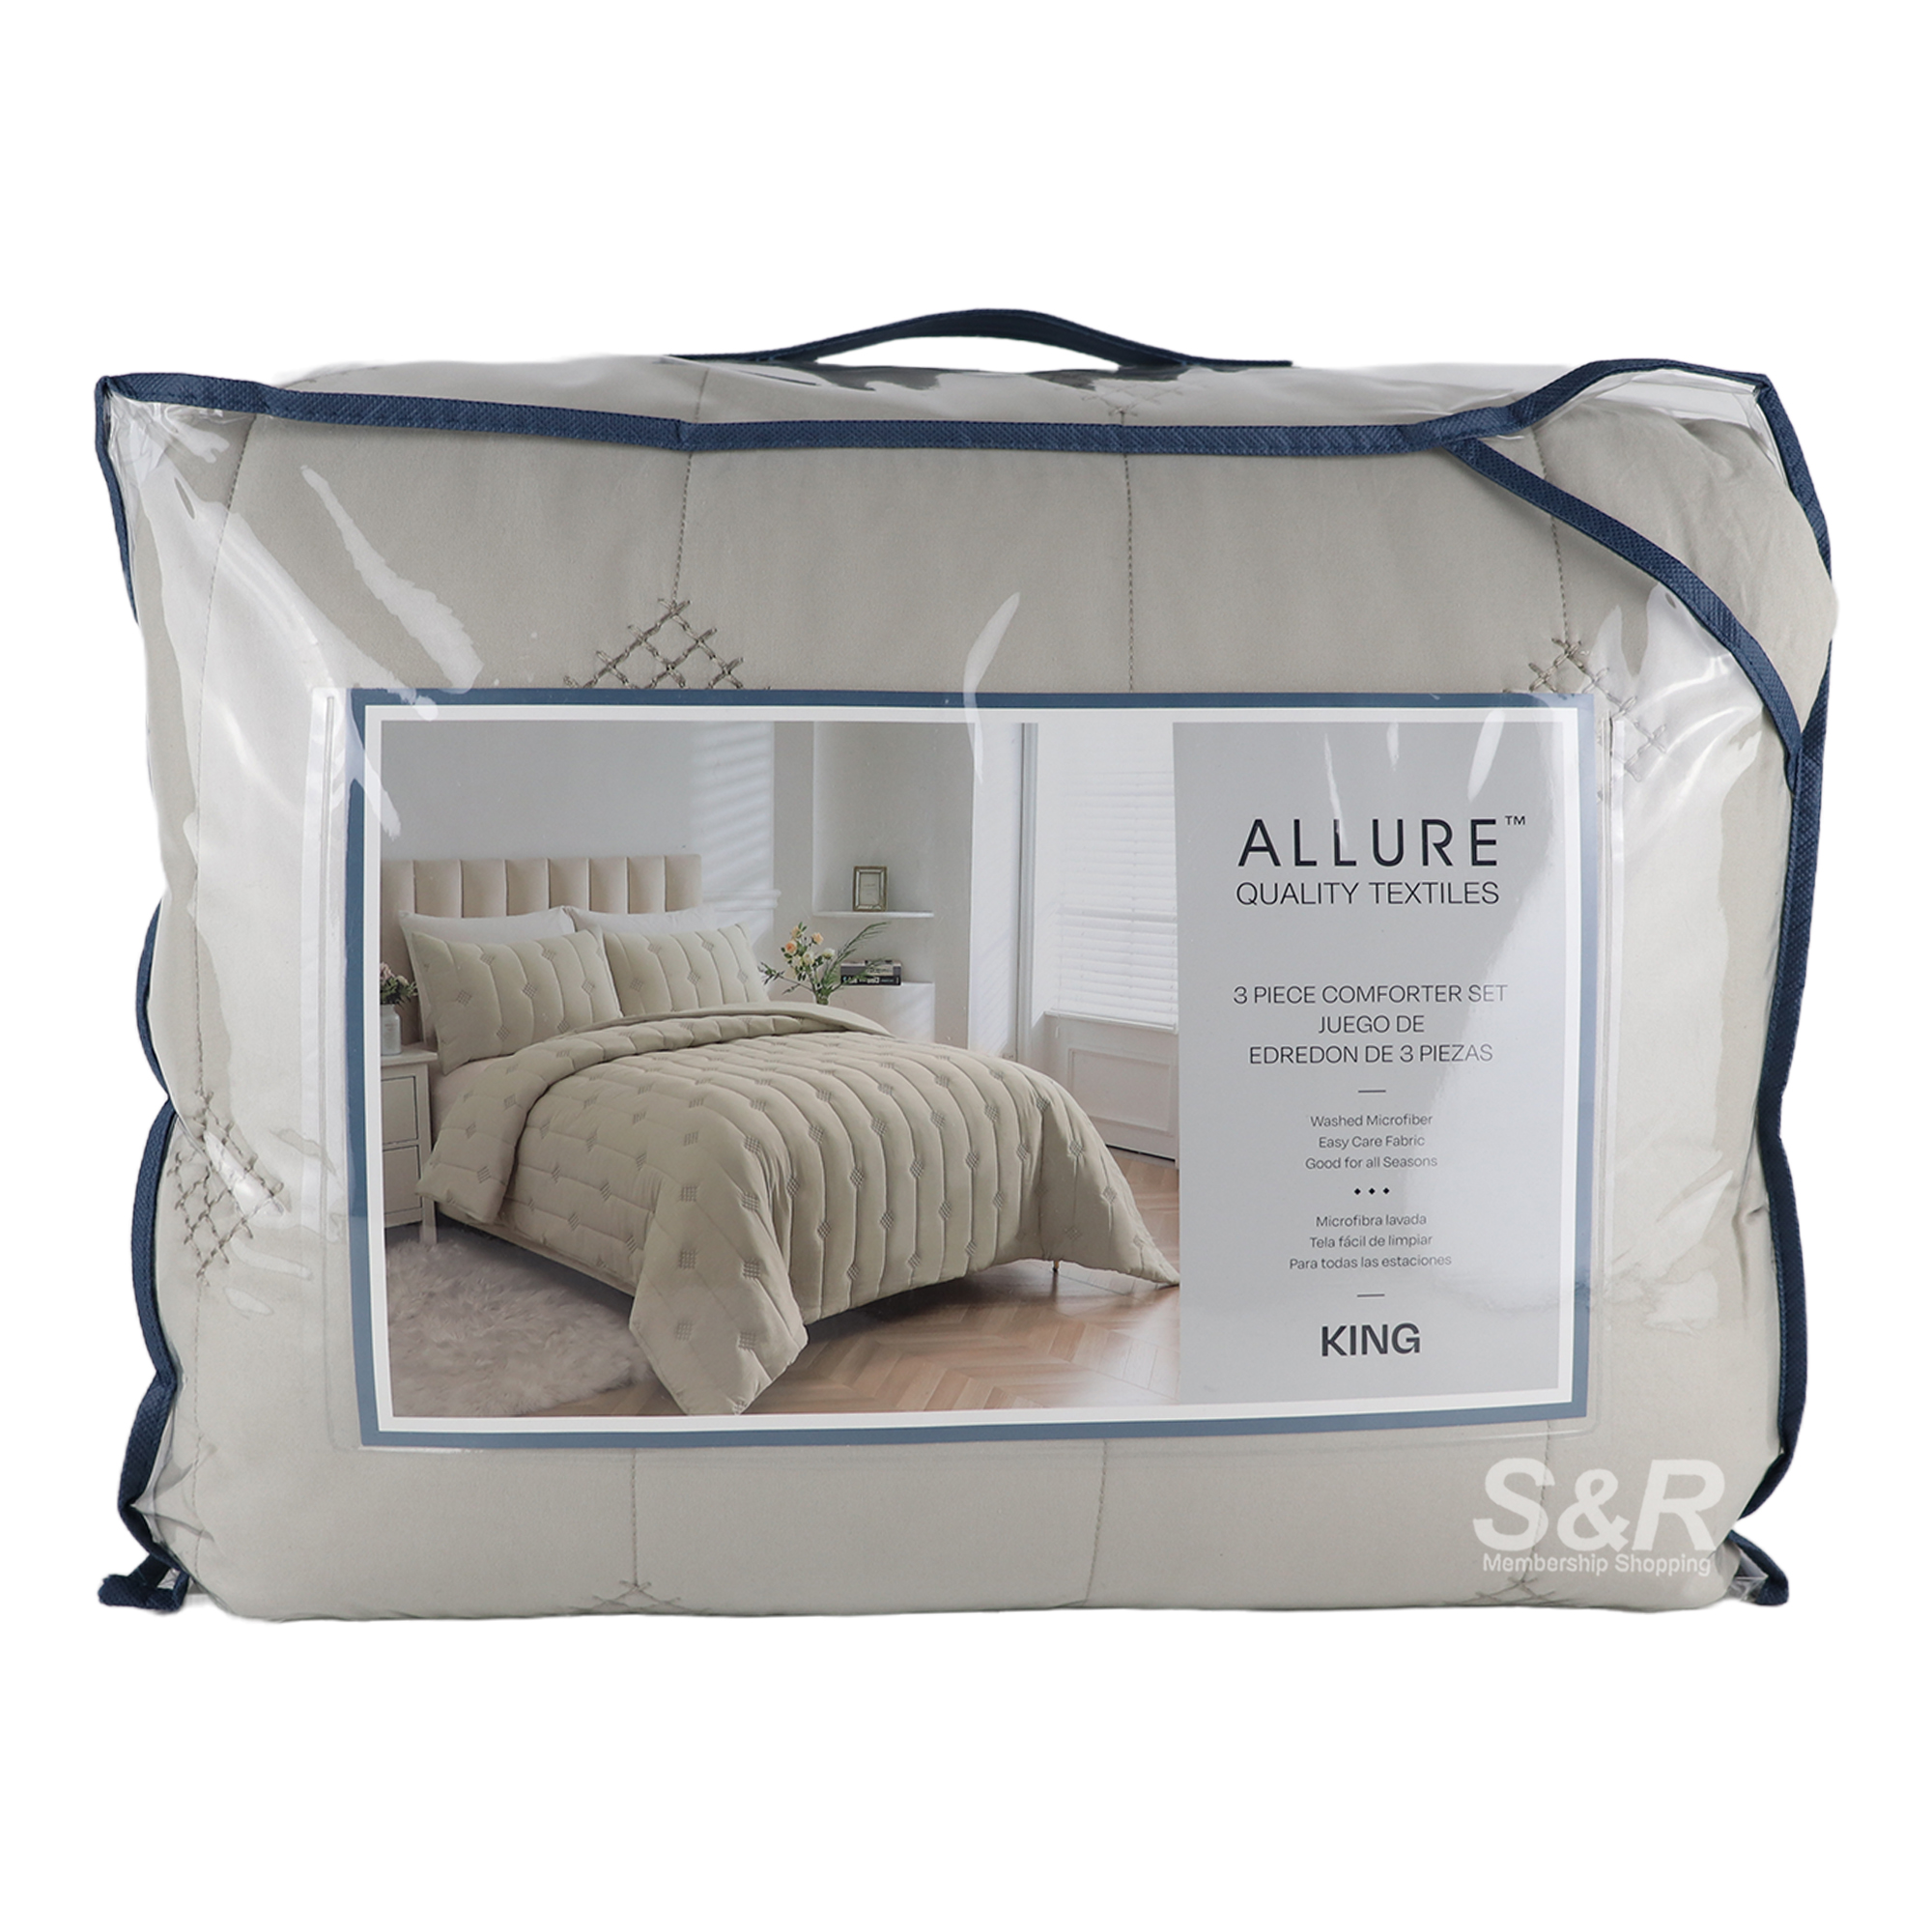 Allure King Comforter Set